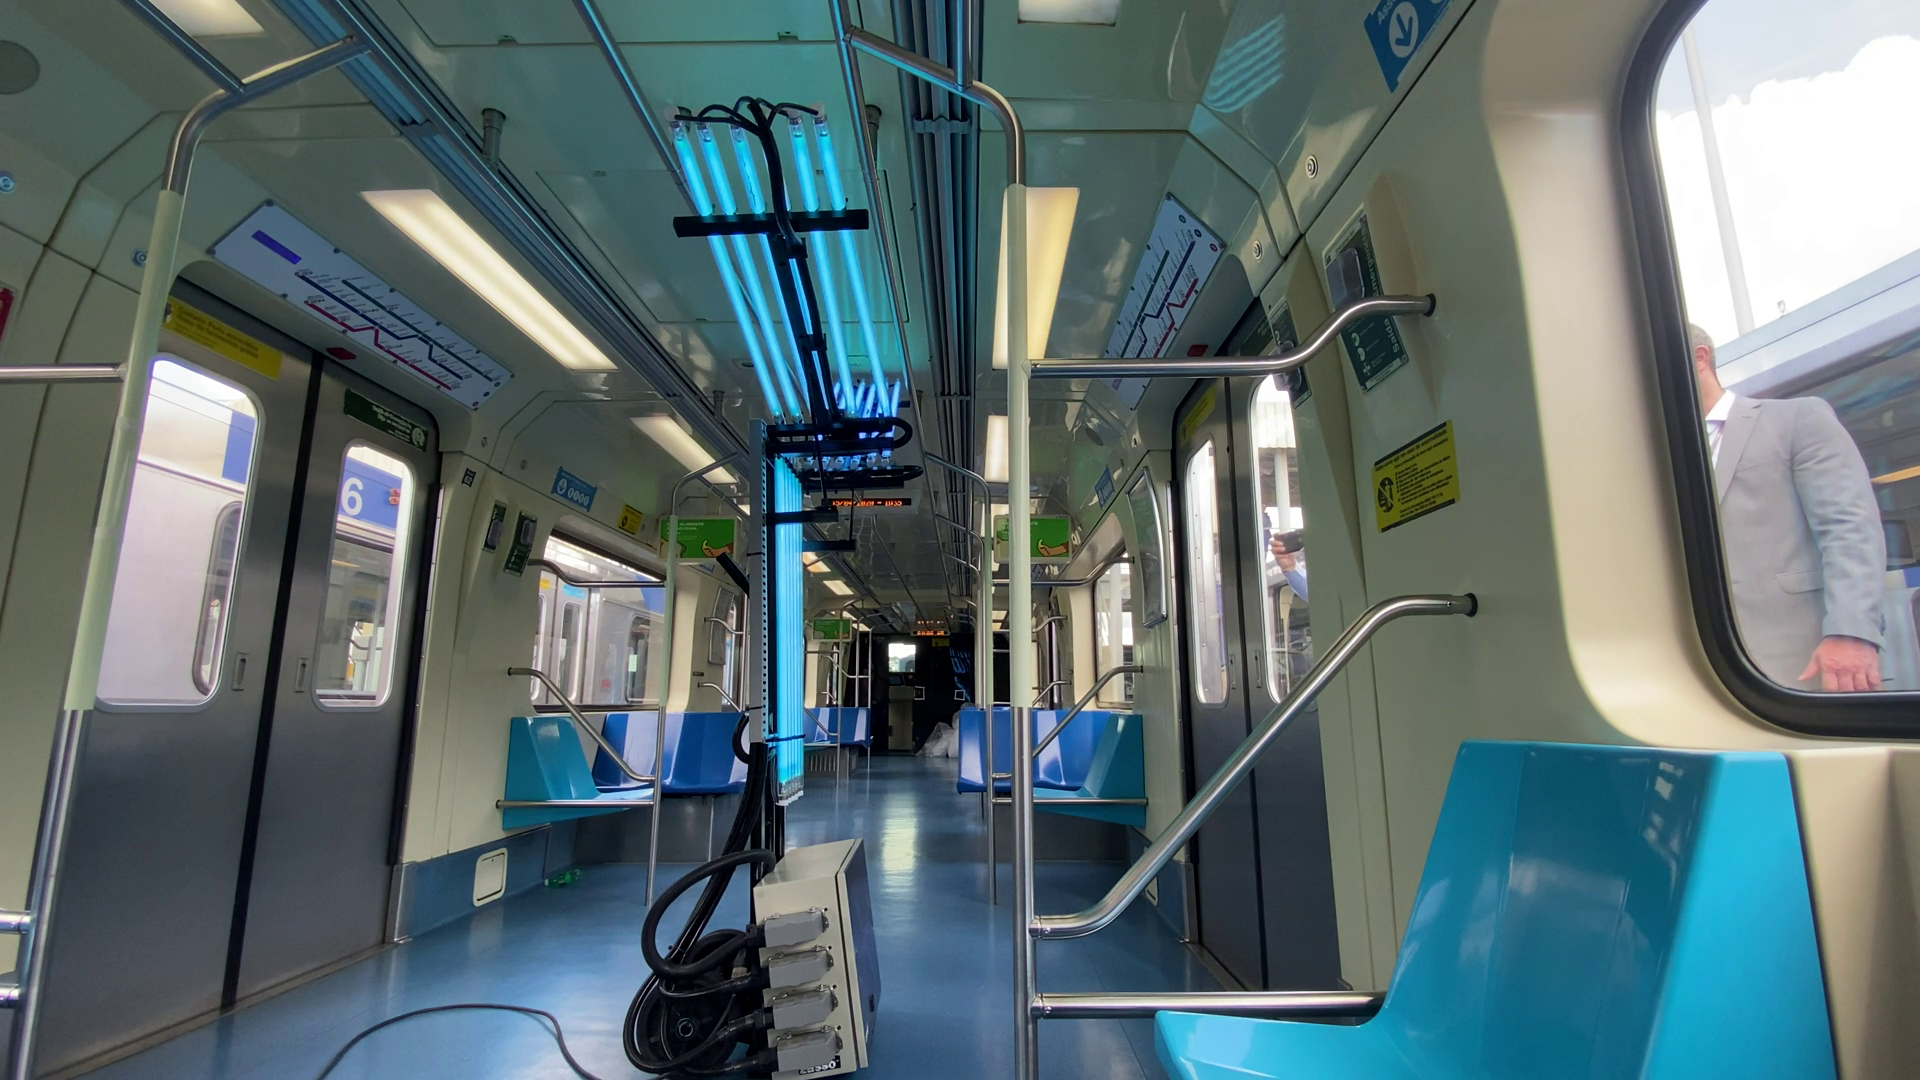 Tecnologia está sendo usada pela Secretaria dos Transportes Metropolitanos nos trens do metrô (Foto: Reprodução)